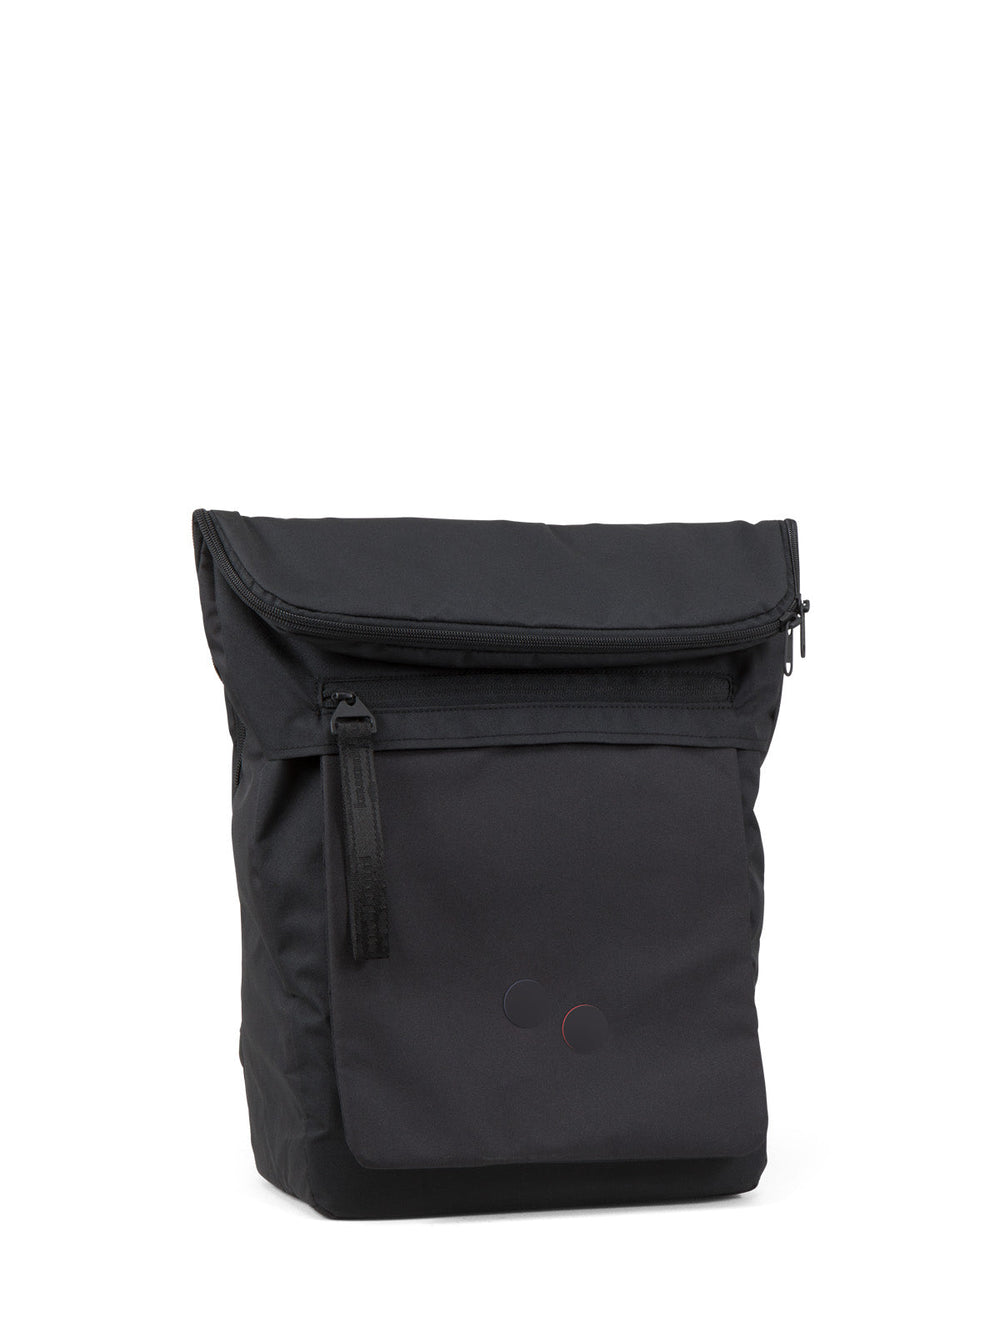 KLAK Rooted Black Backpack